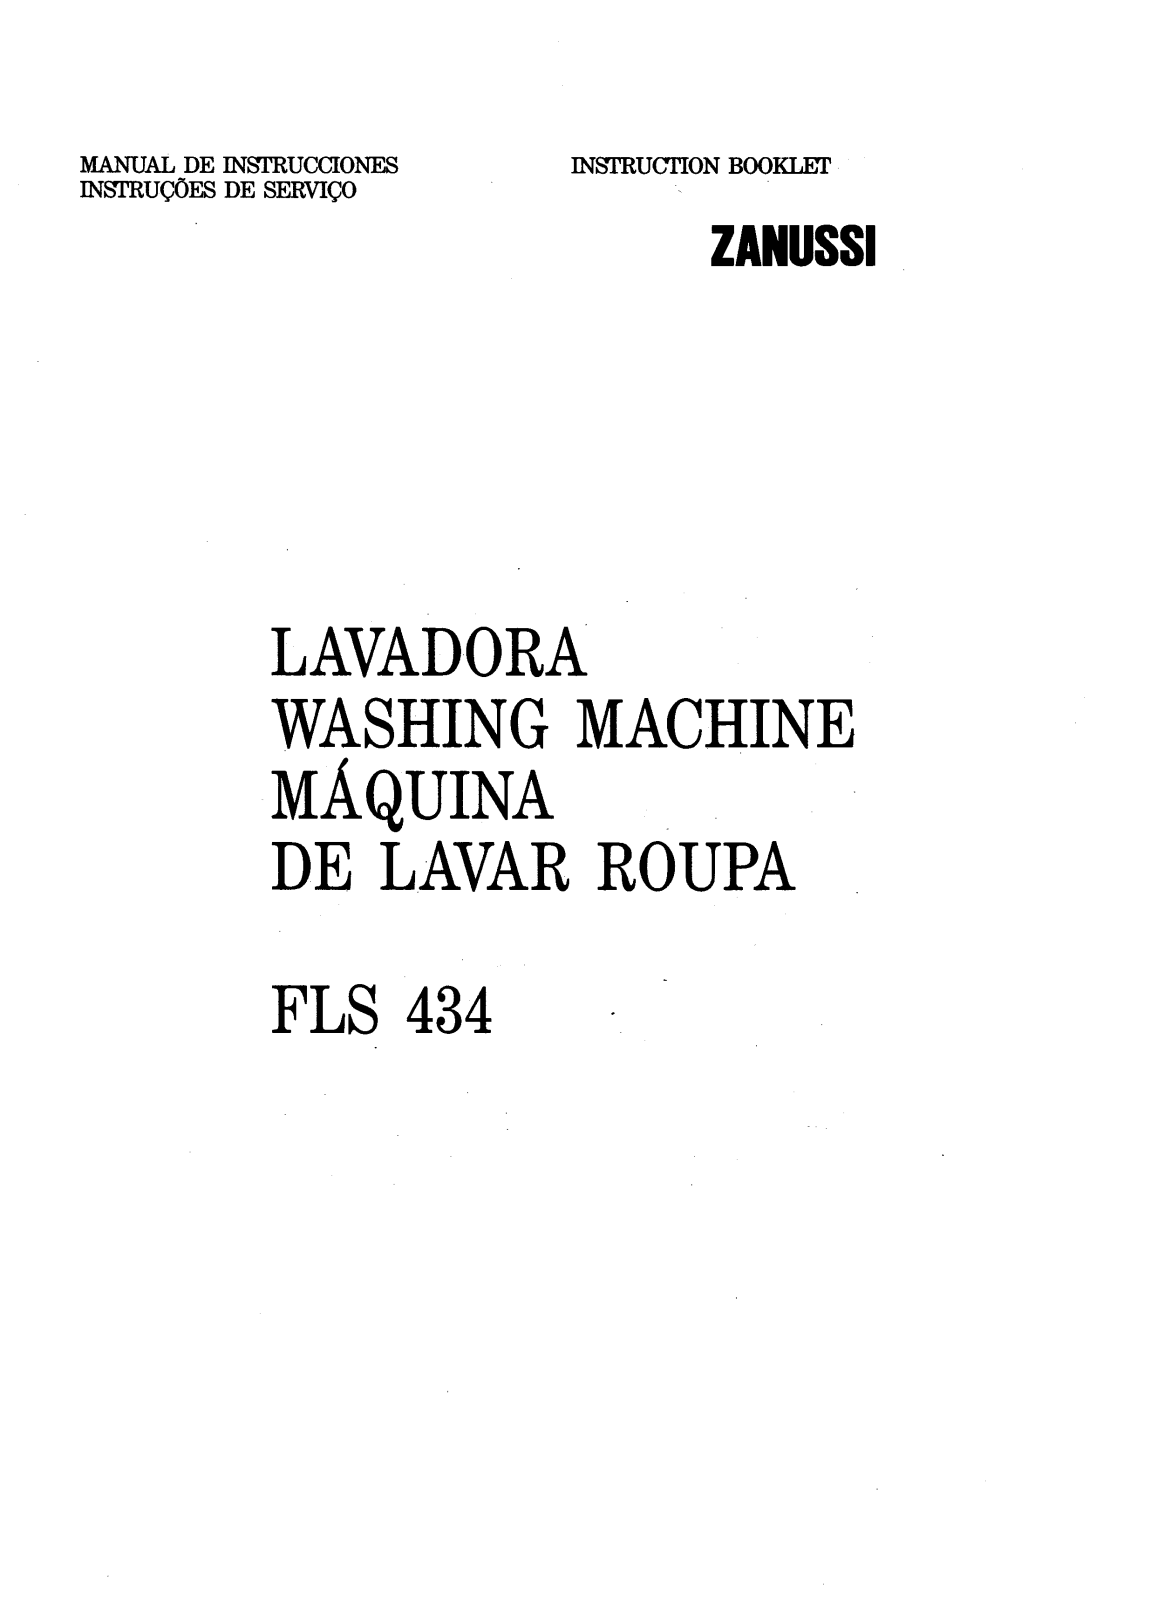 Zanussi FLS434 User Manual